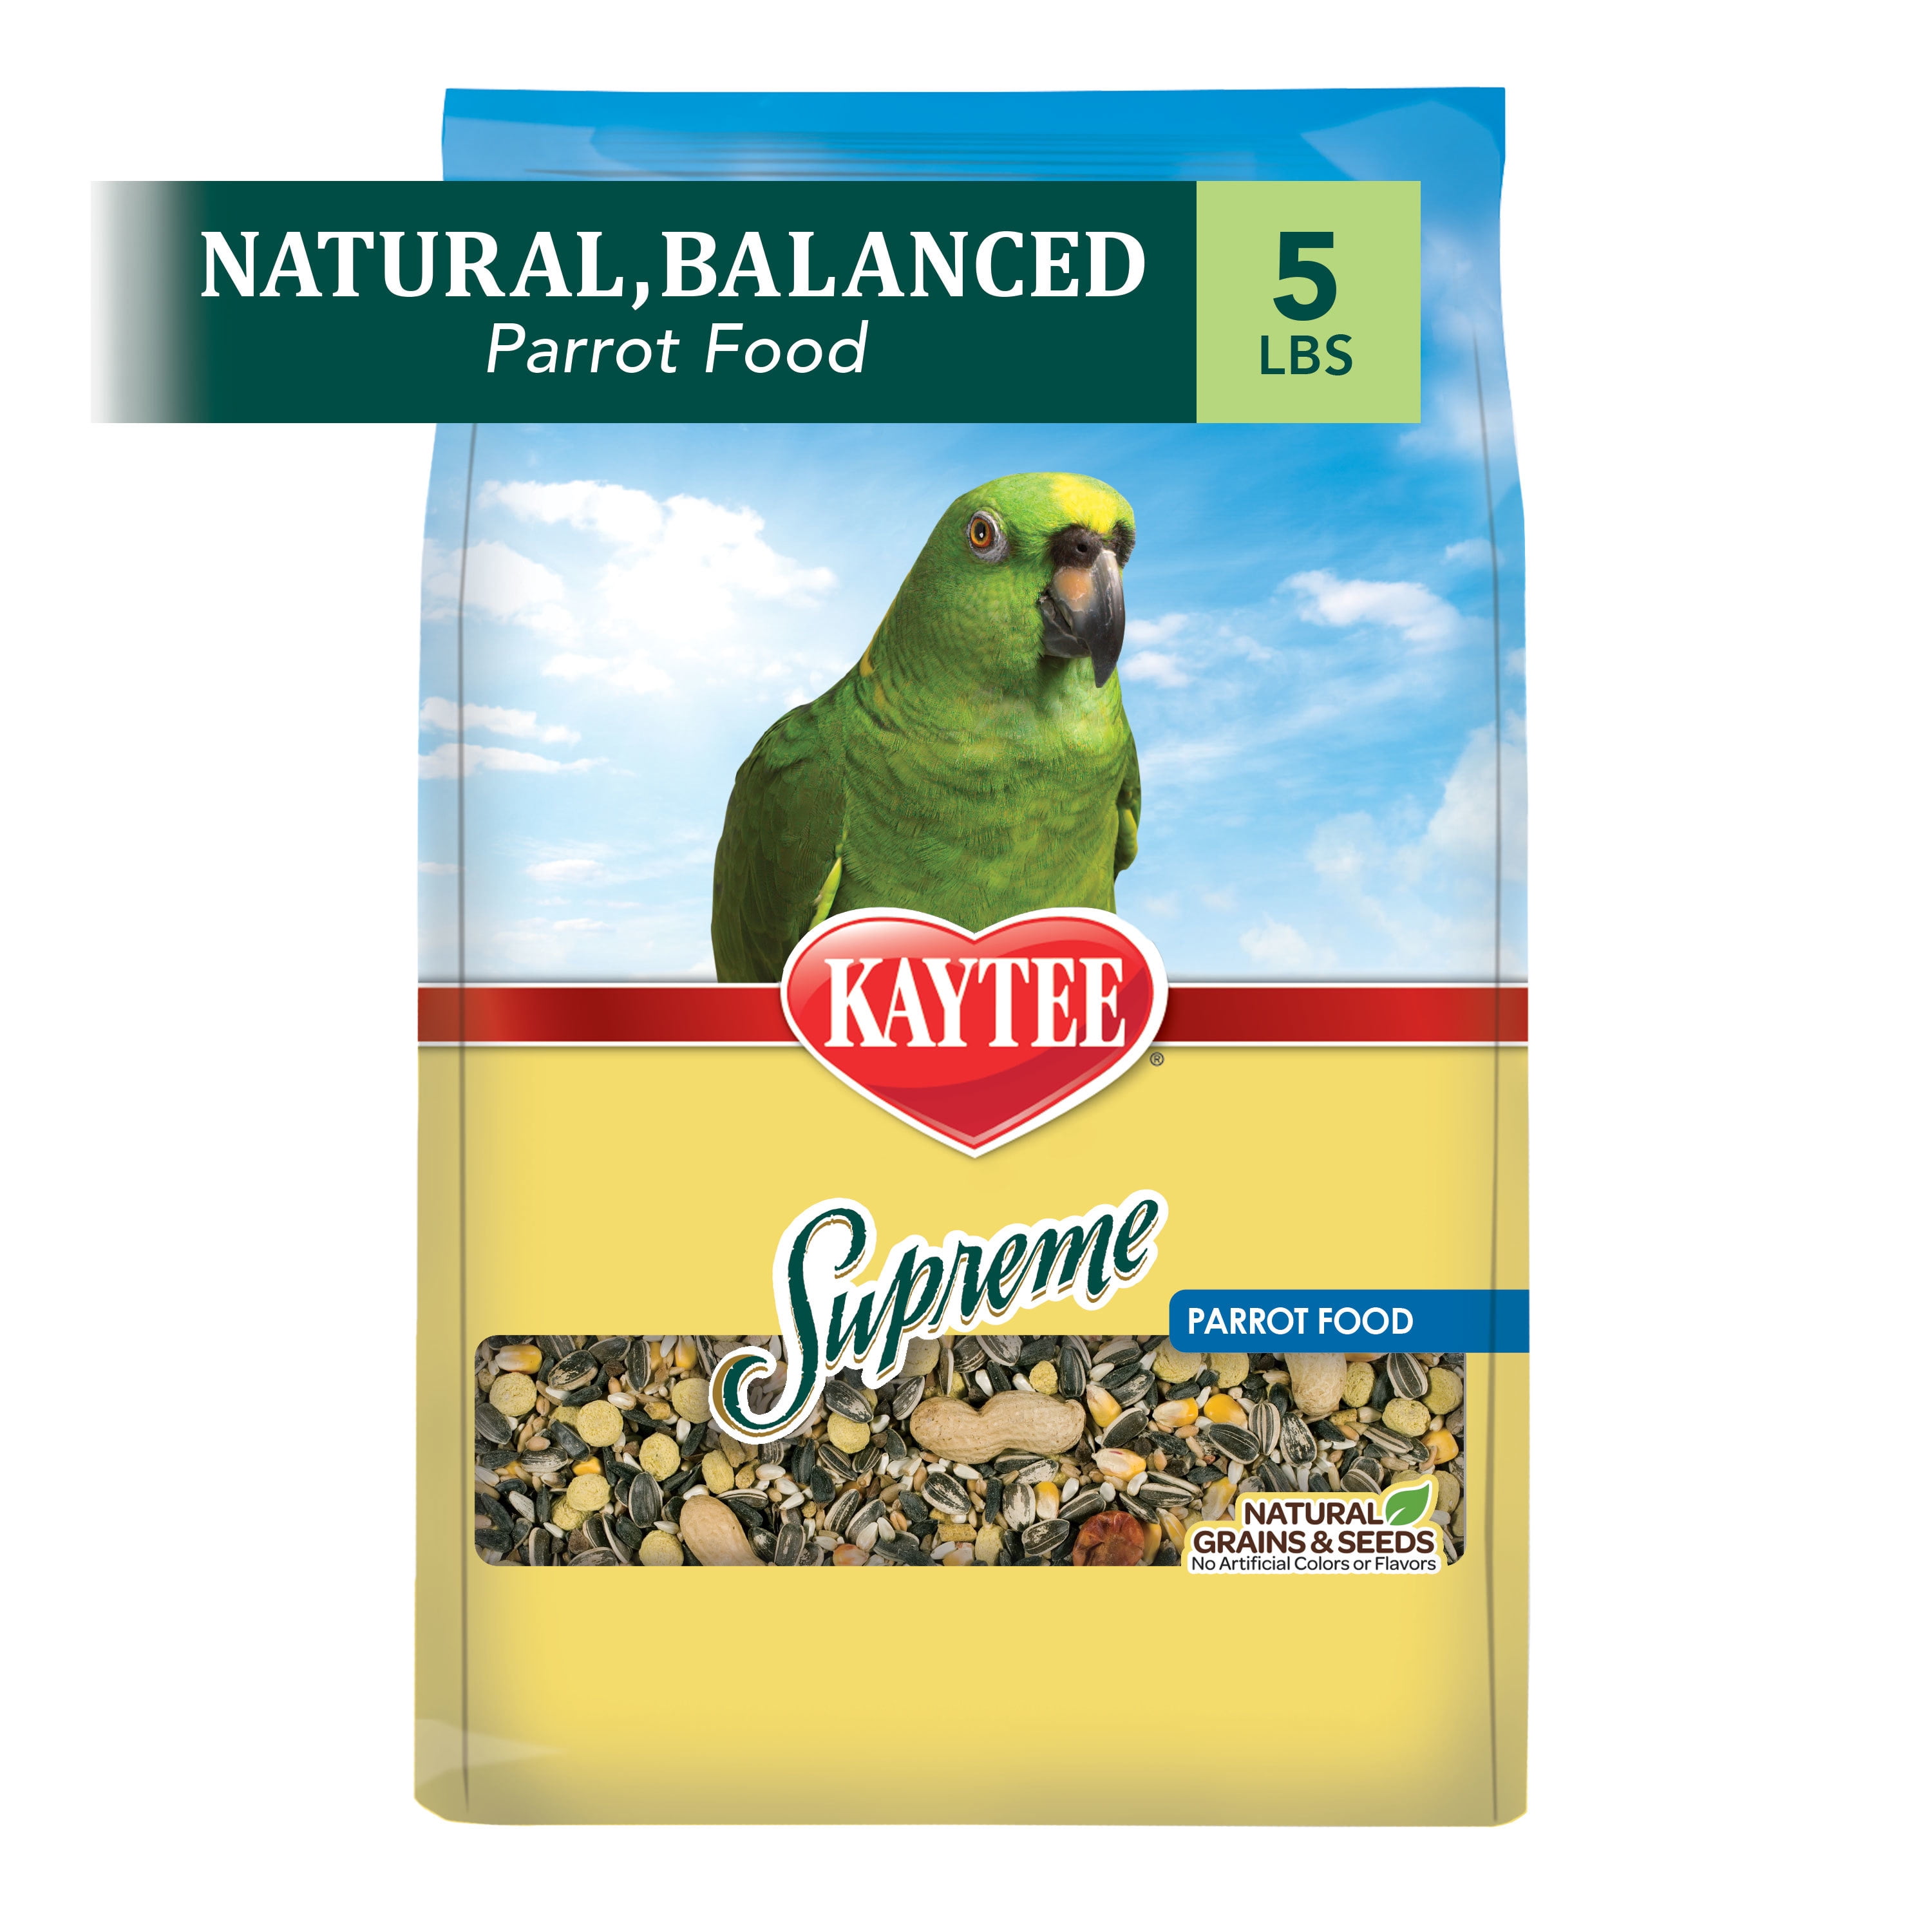 Kaytee Supreme Bird Food For Parakeets,5-Lb Bag 